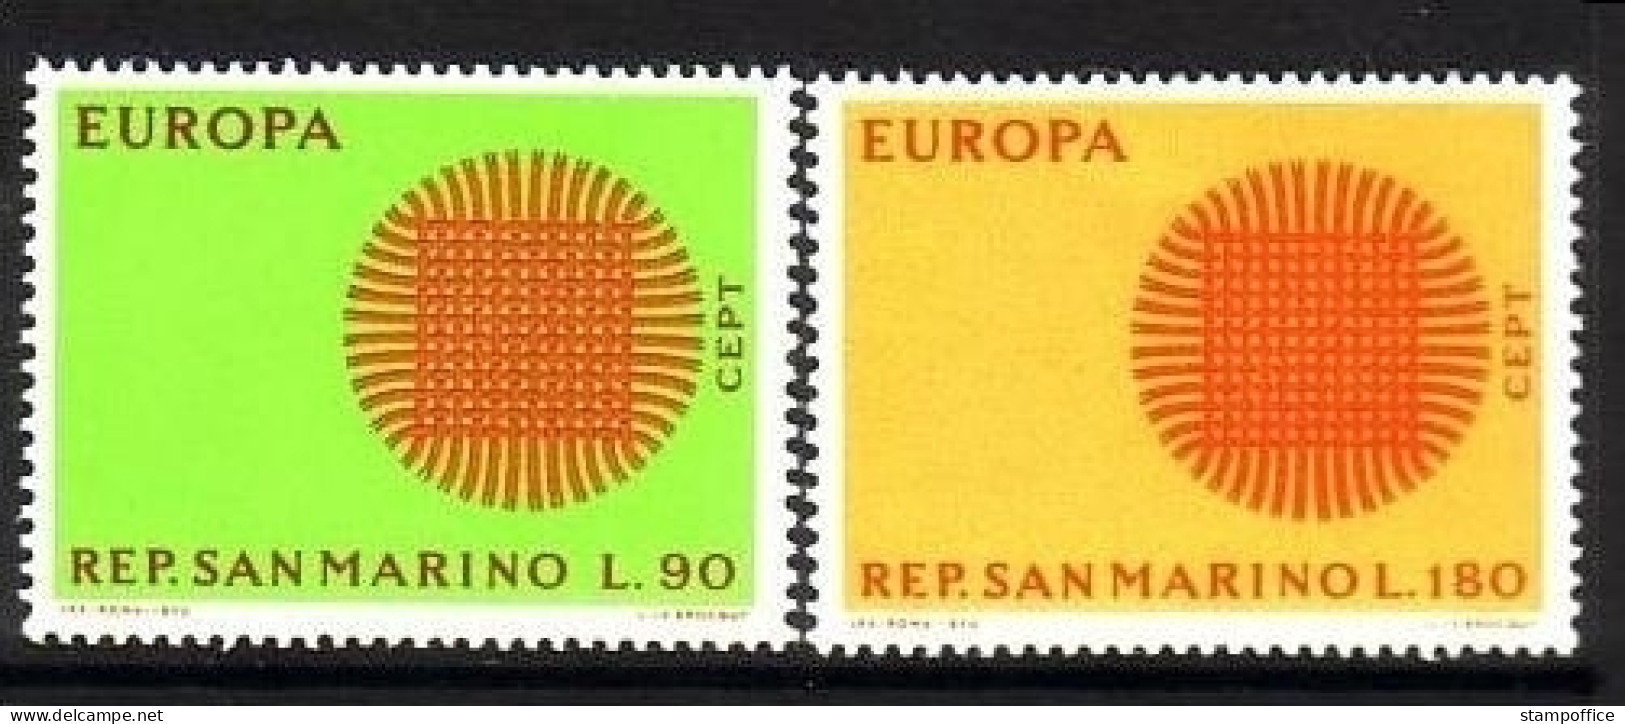 SAN MARINO MI-NR. 955-956 POSTFRISCH(MINT) EUROPA 1970 - SONNENSYMBOL - 1970